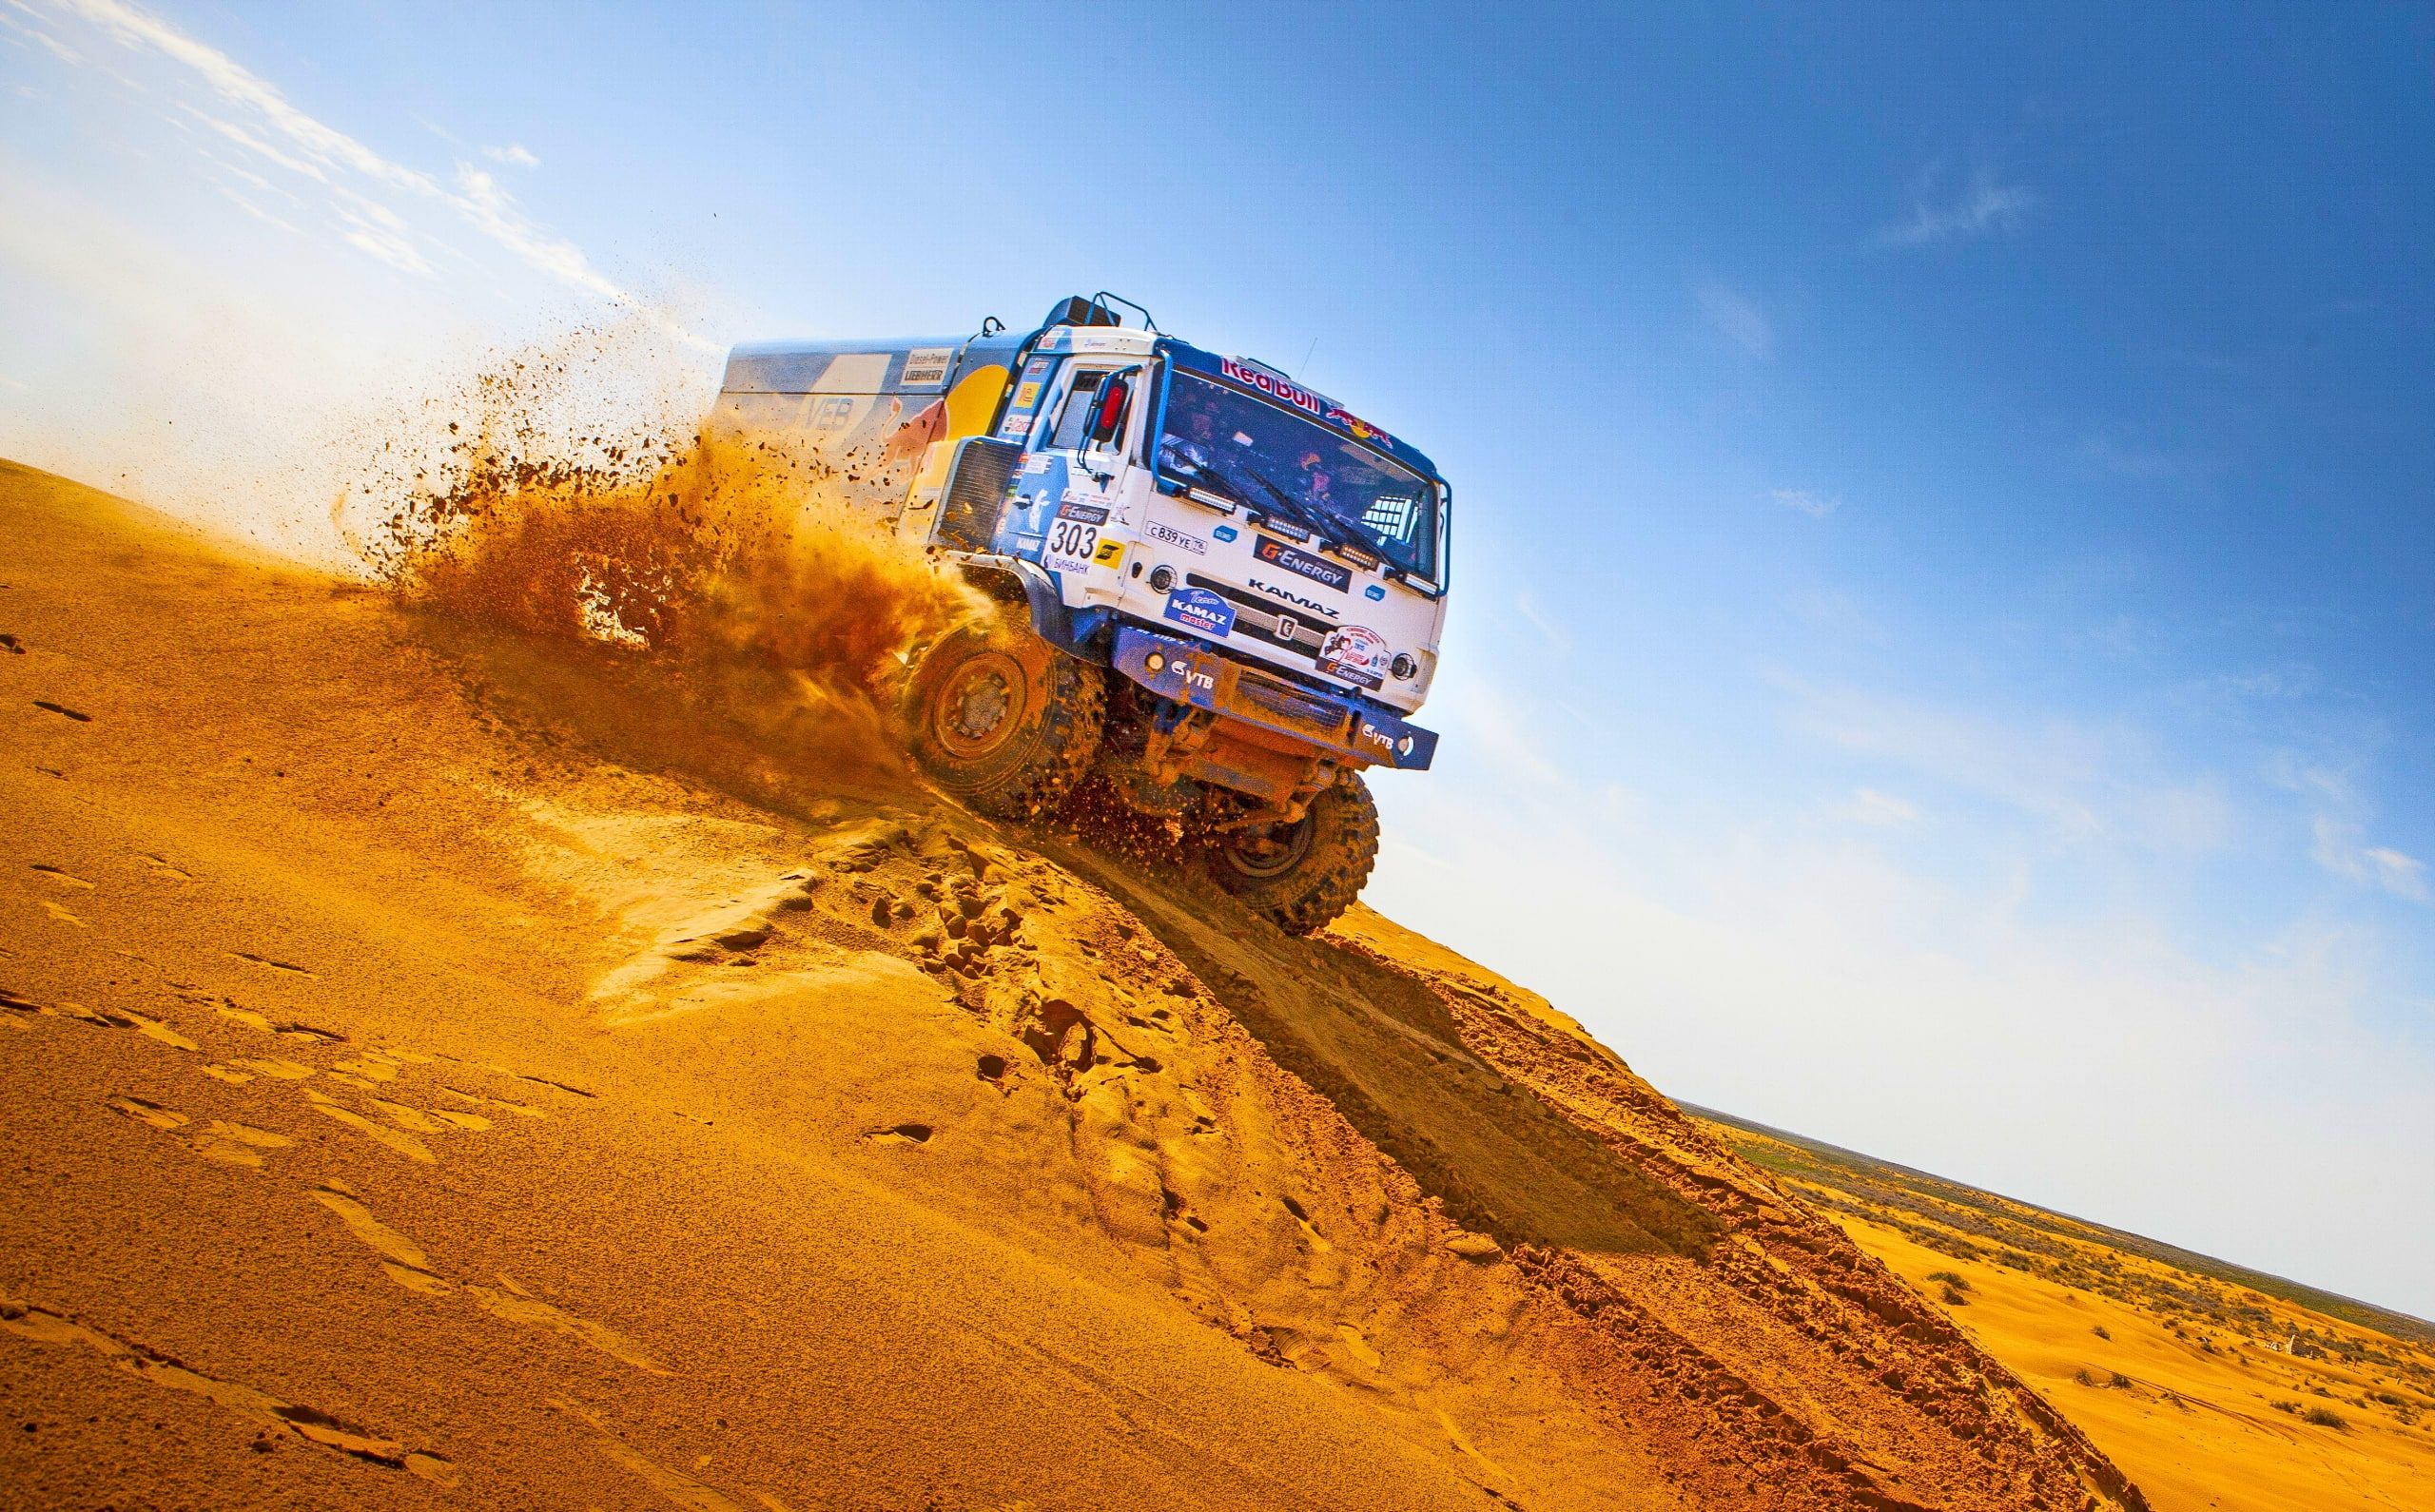 دانلود تصویر رایگان و حیرت انگیز رالی داکار با شرکت کامیون محبوب تیم ردبول